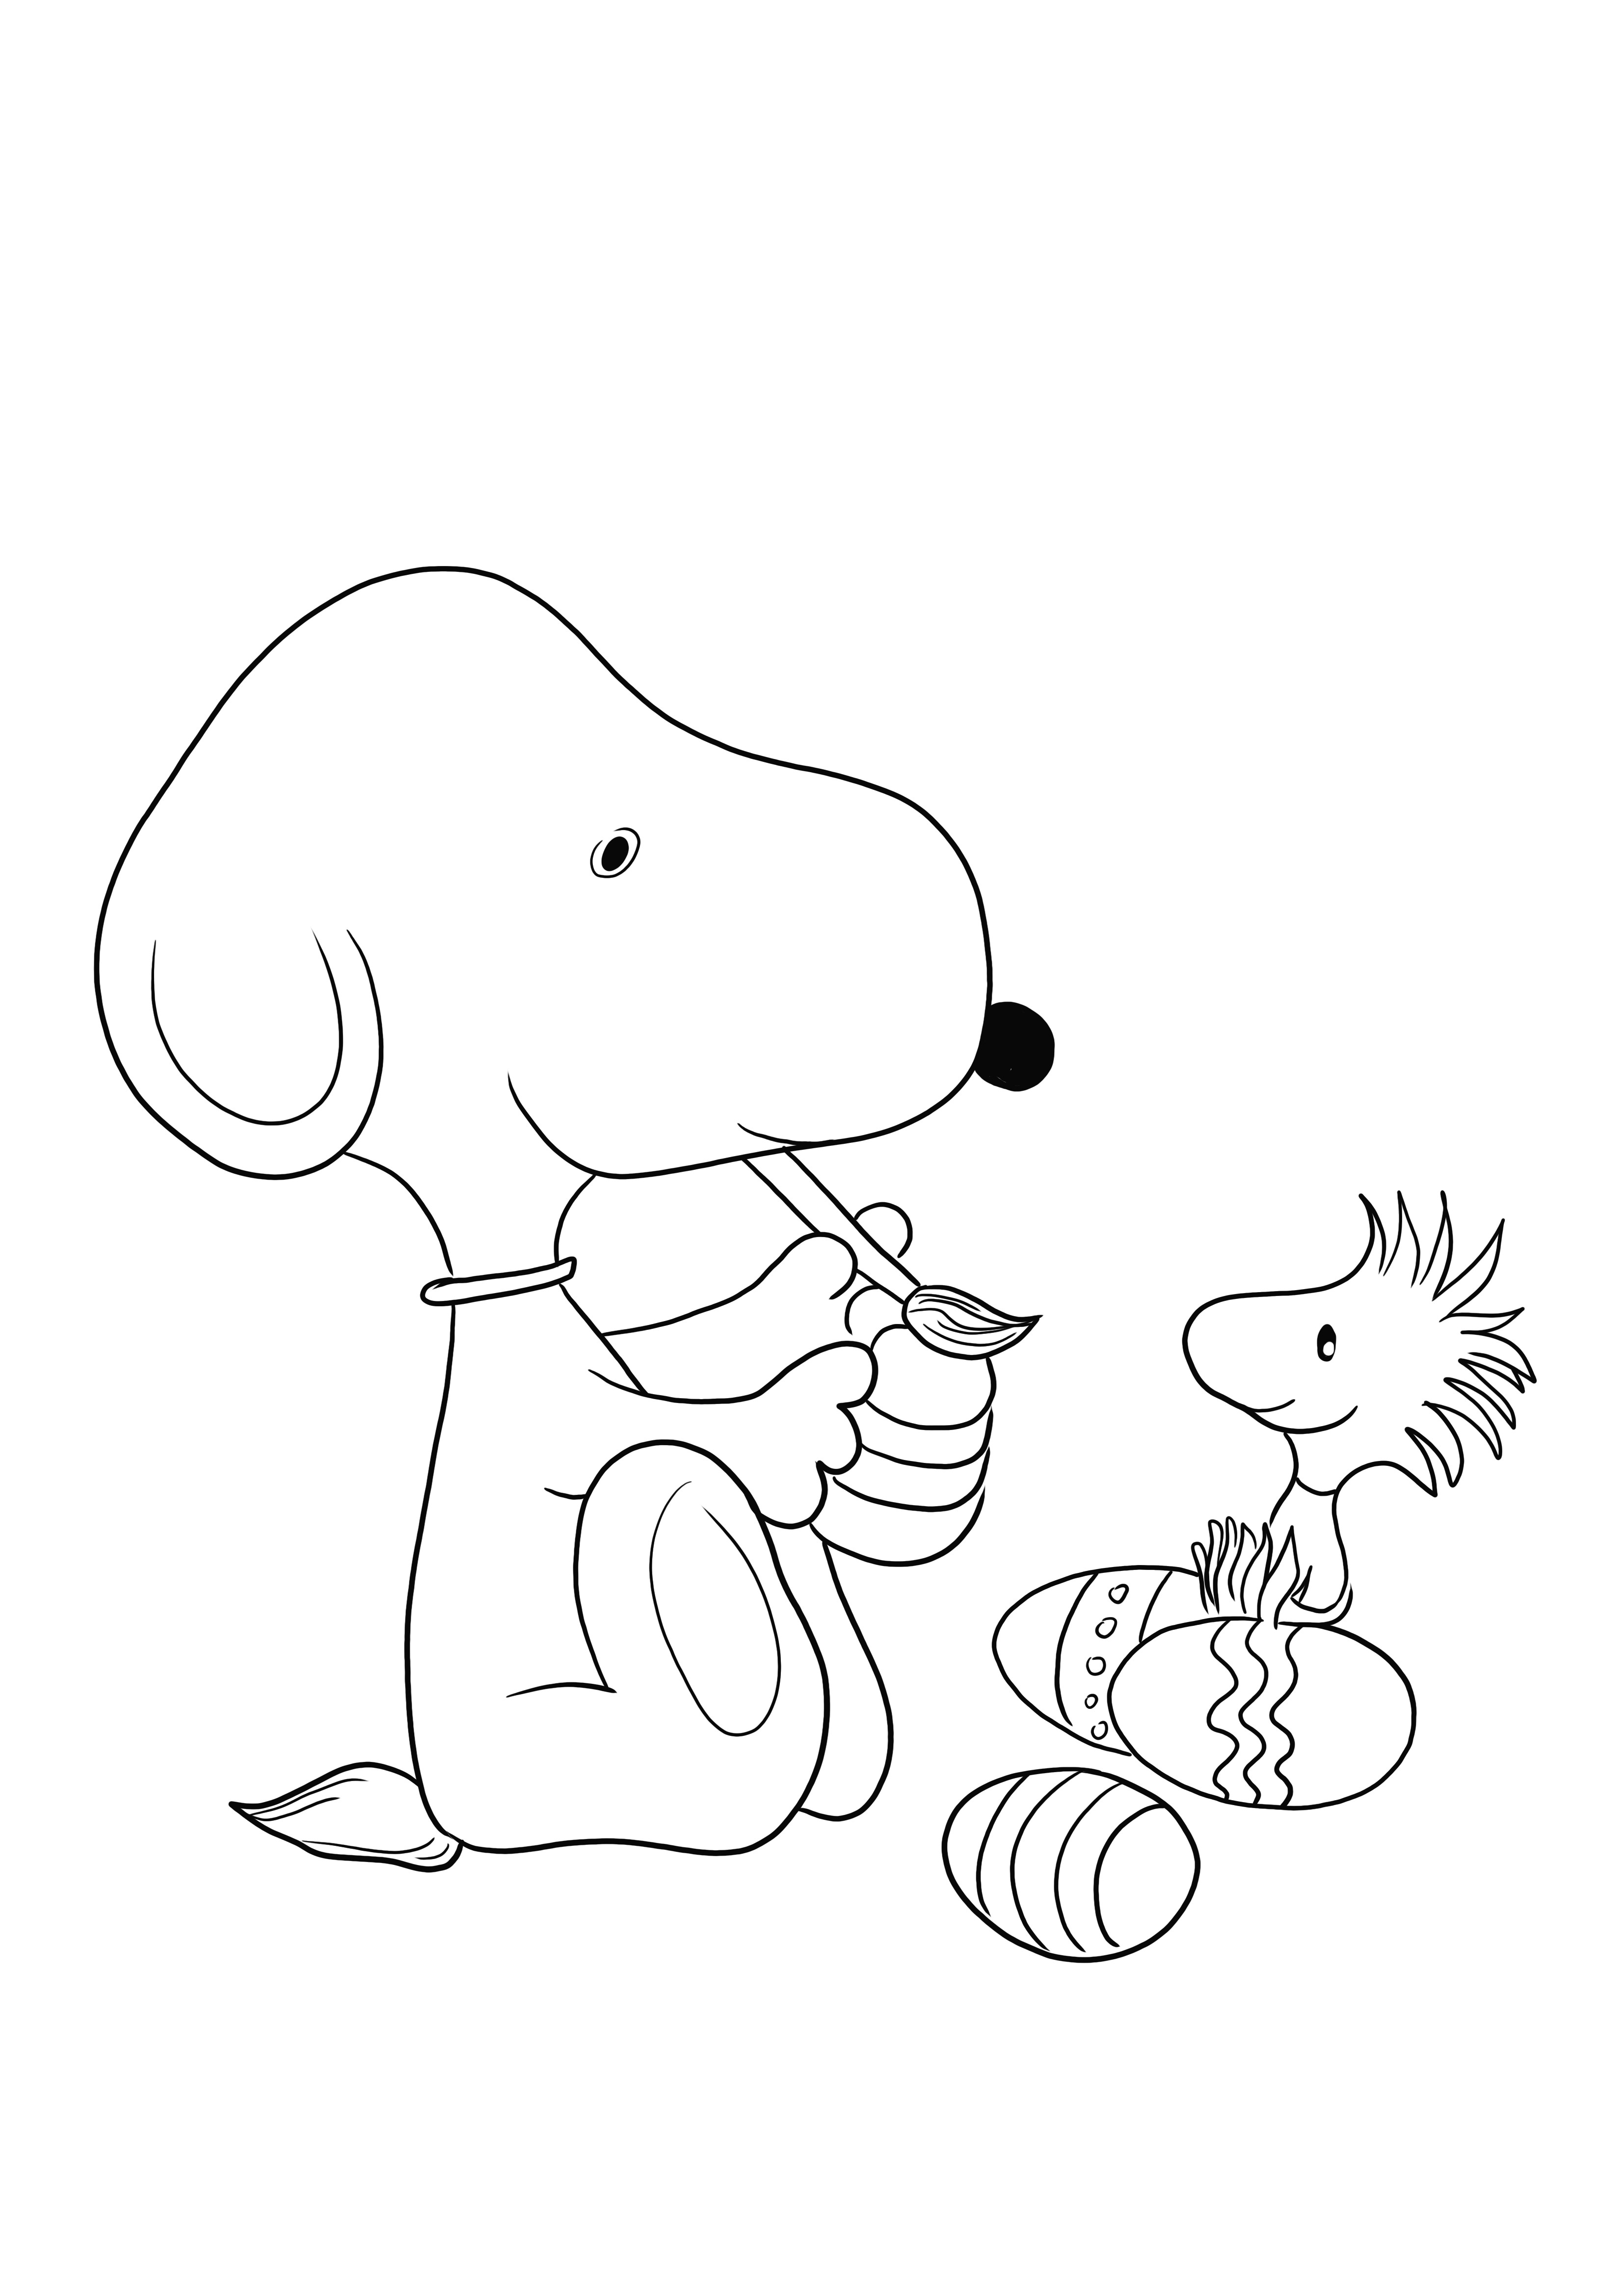 Snoopy din desenul animat Peanuts pictează un ou de Paște pentru descărcare gratuită și imagine colorată